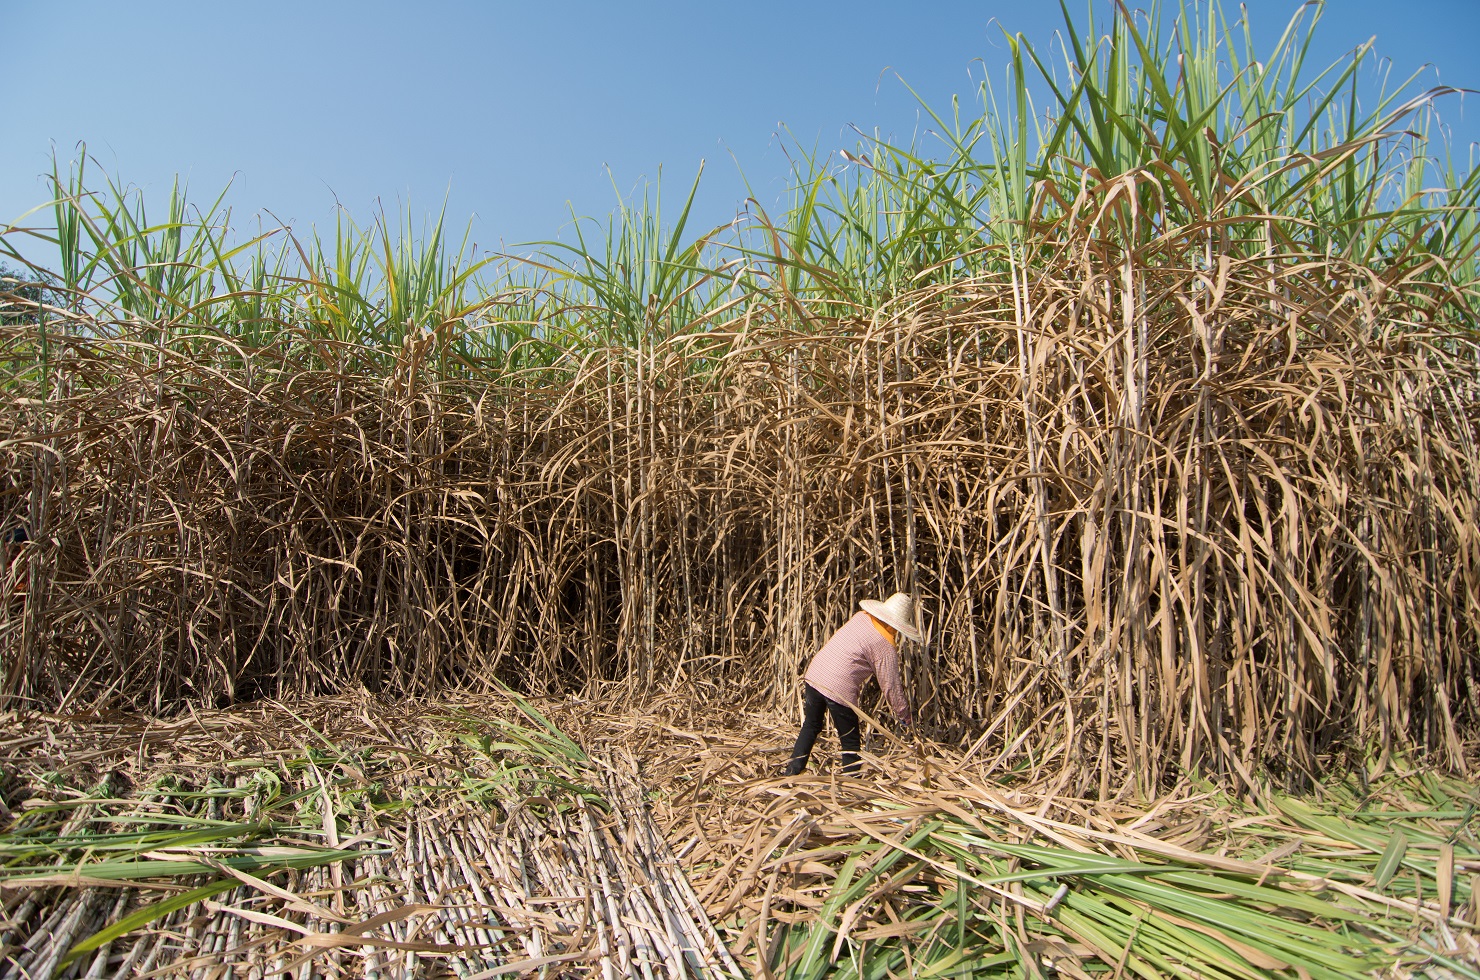 Г сахарный тростник. Сахарный тростник в Бразилии. Сахарный тростник в Южной Америке. Плантации сахарного тростника в Бразилии. Сахарный тростник в Америке.